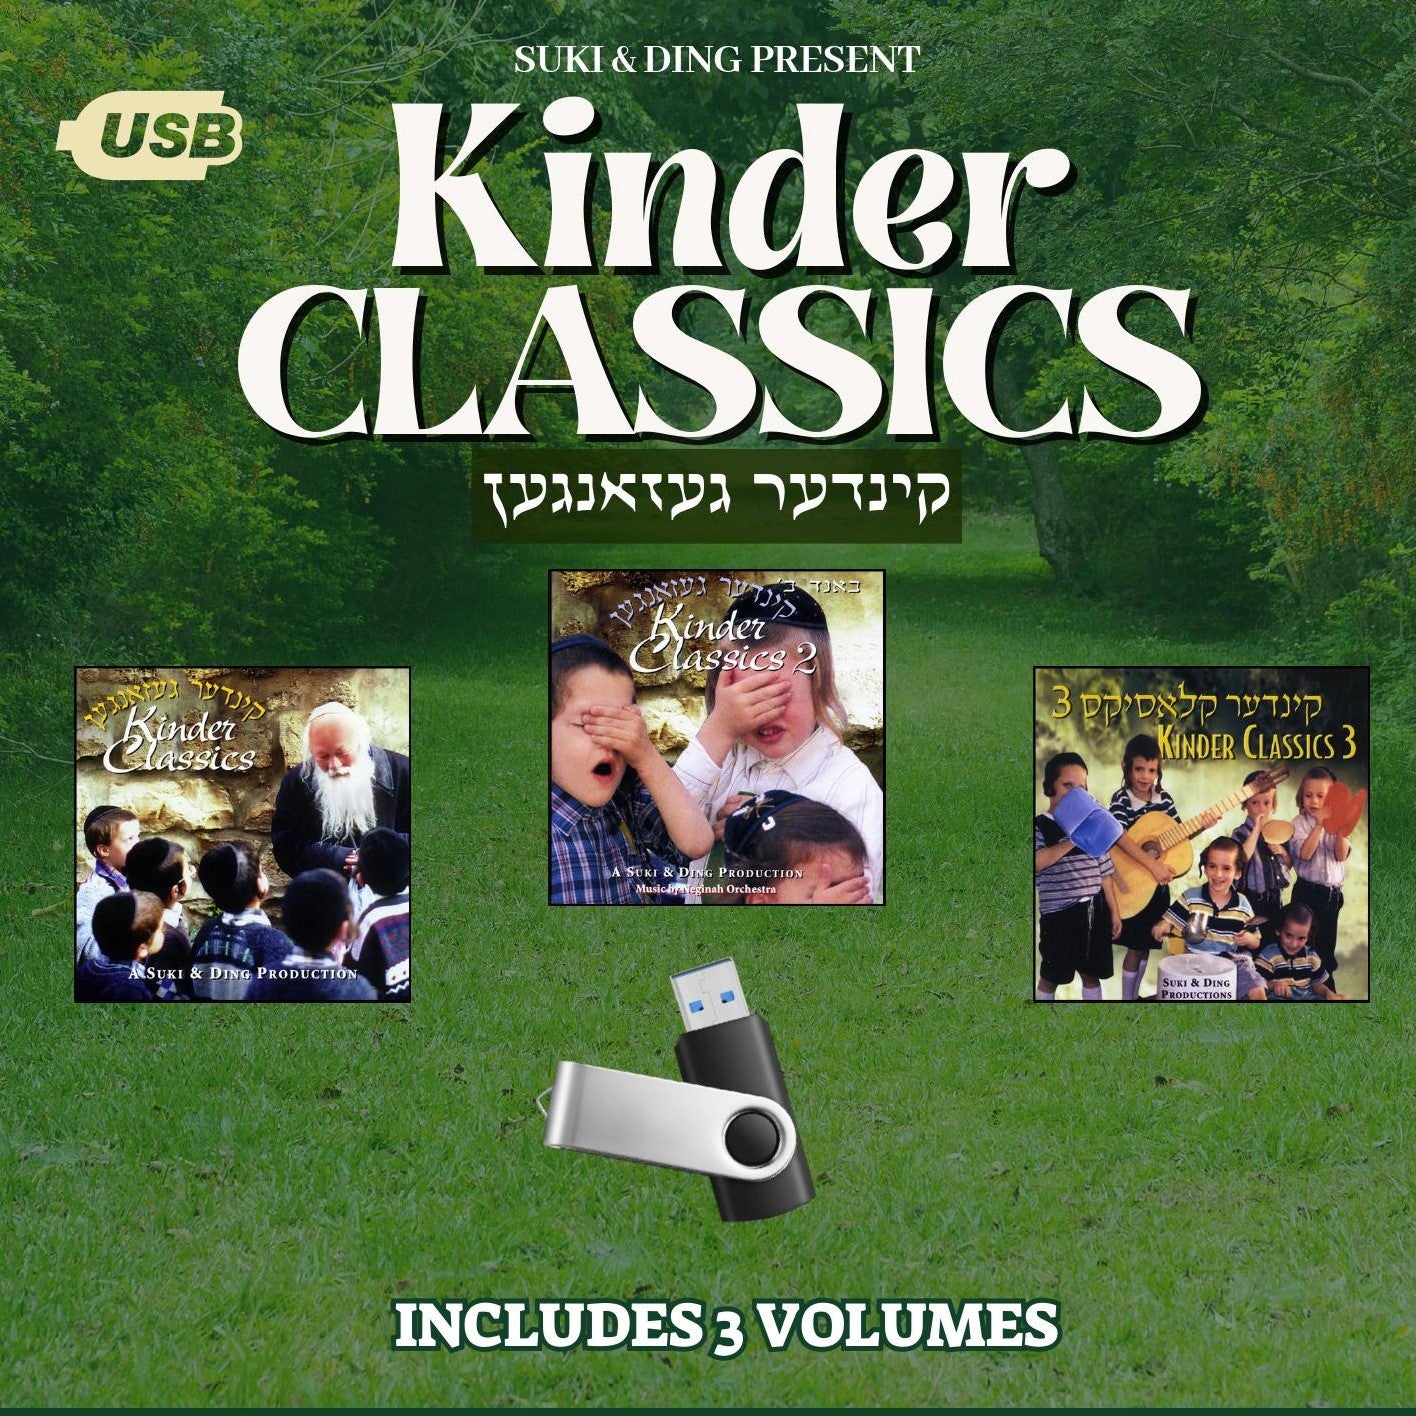 All Star - Kinder Classics 1-3 (USB)